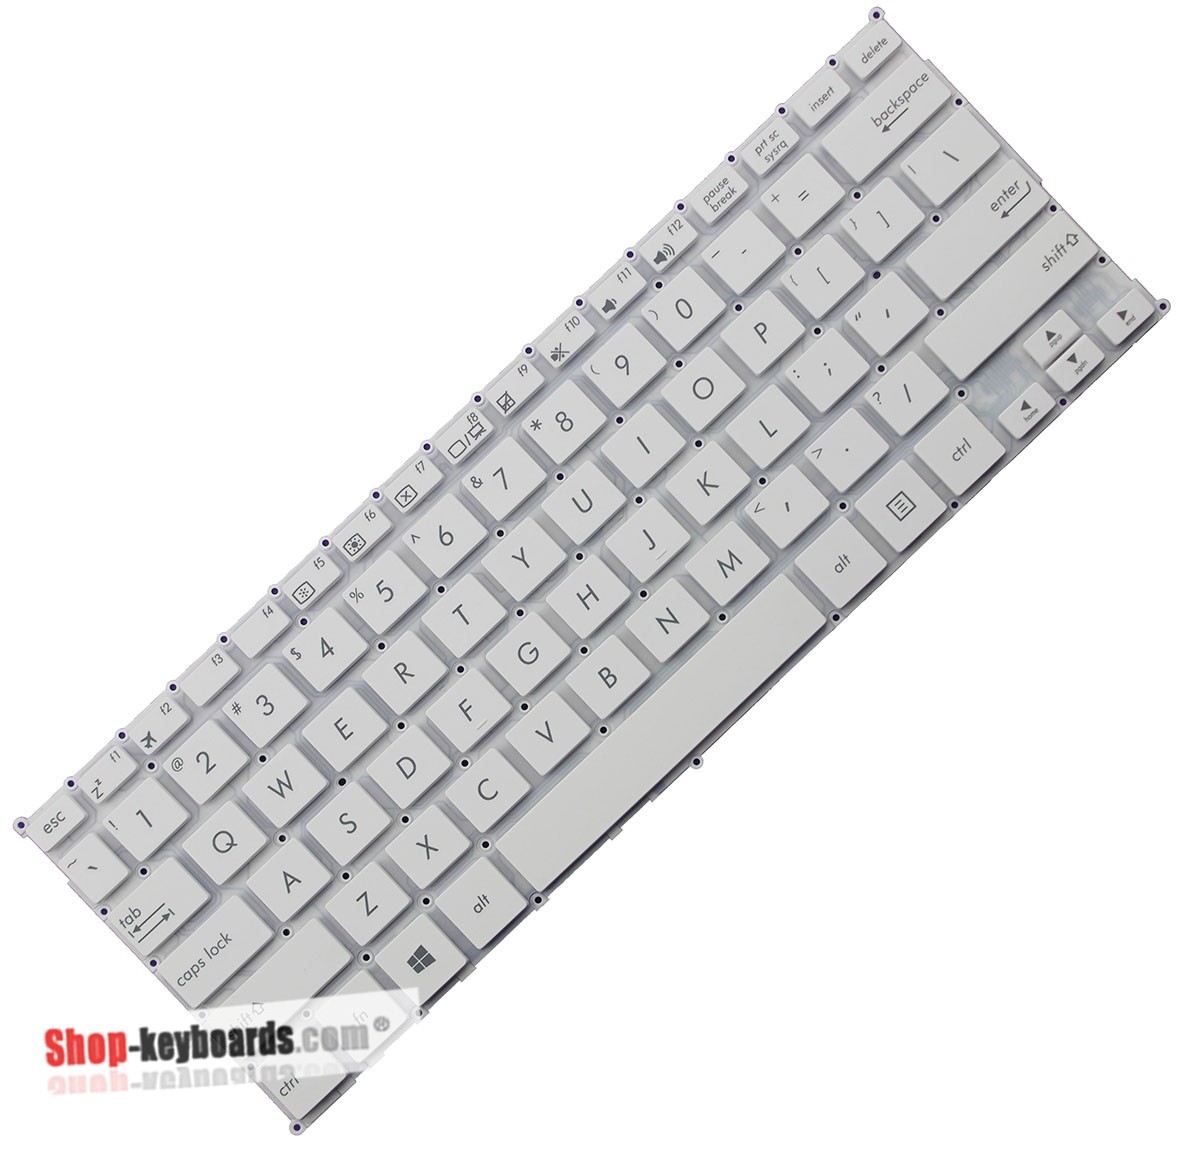 Asus 0KNL0-1100KO00  Keyboard replacement